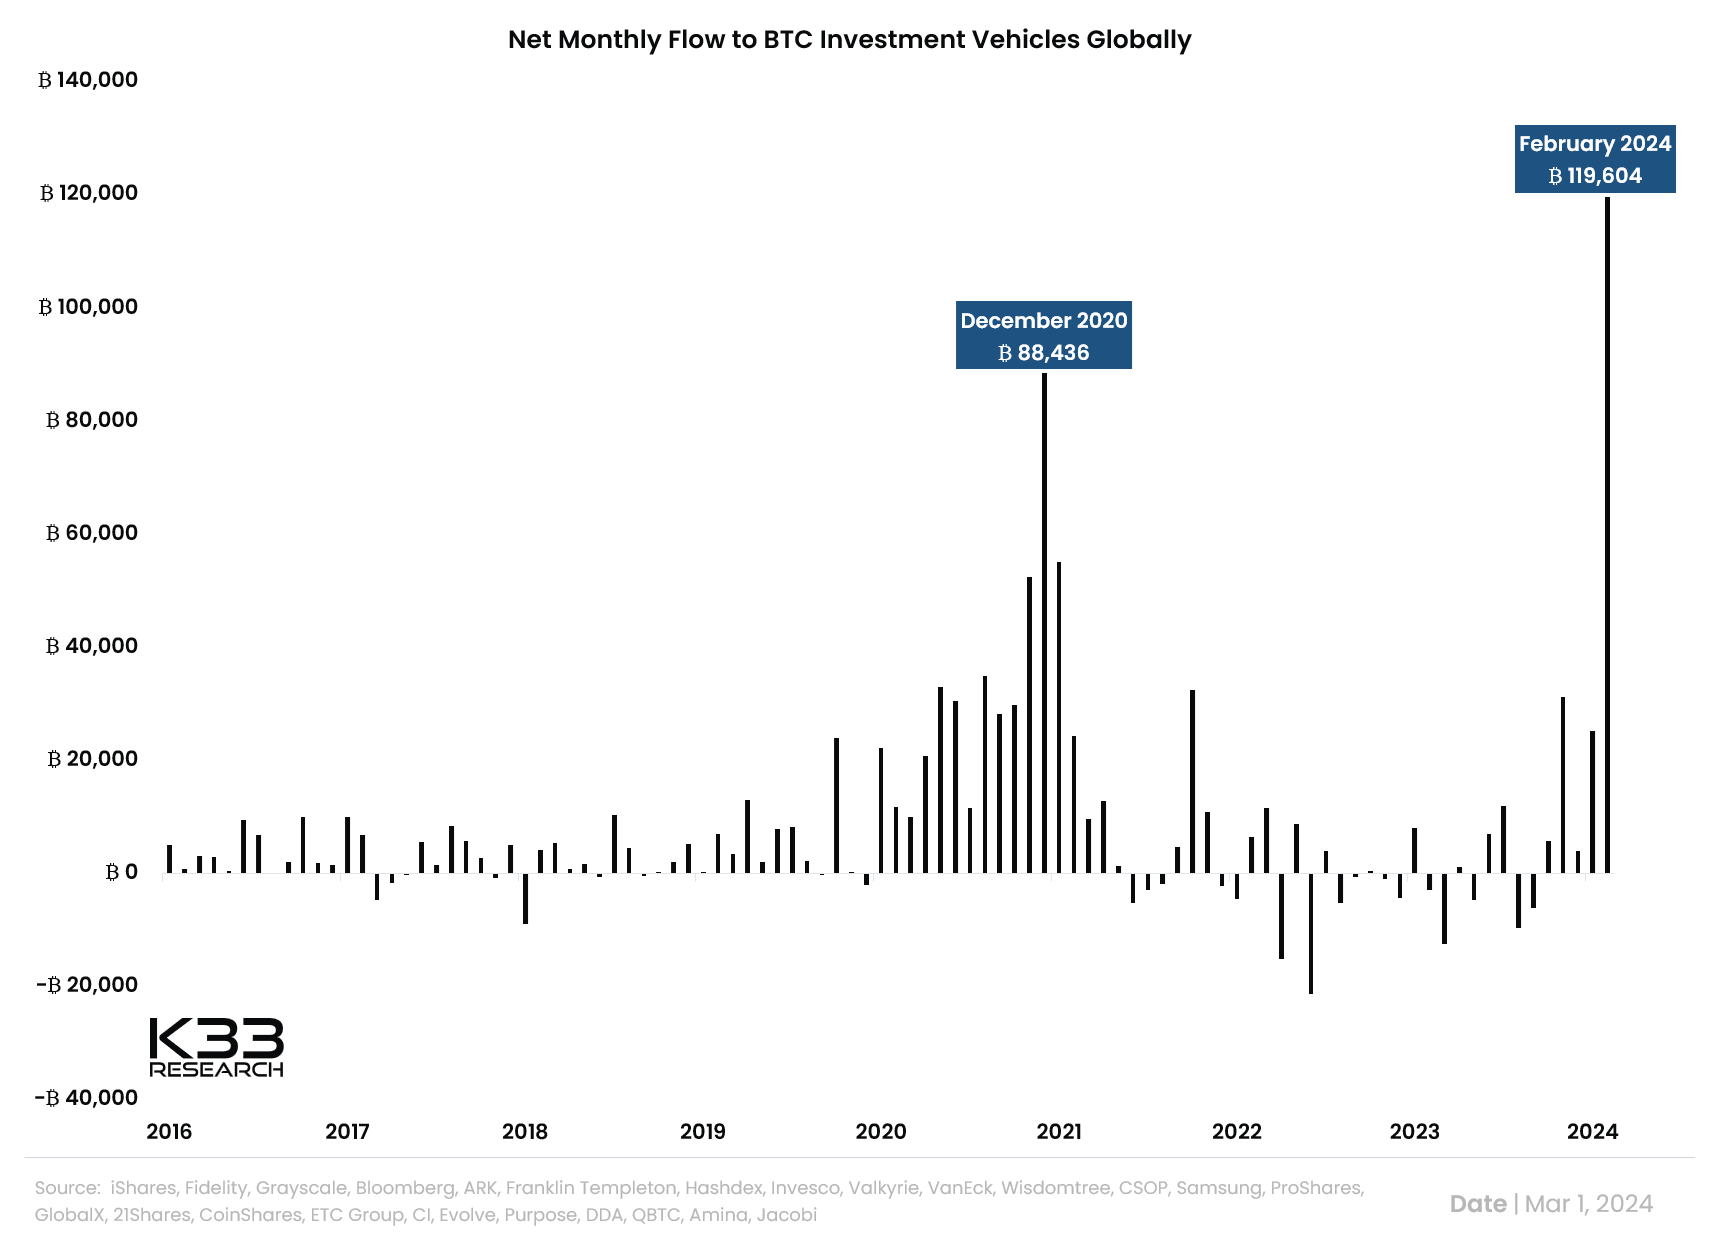 Flujo mensual neto hacia vehículos de inversión en bitcoin a nivel global.